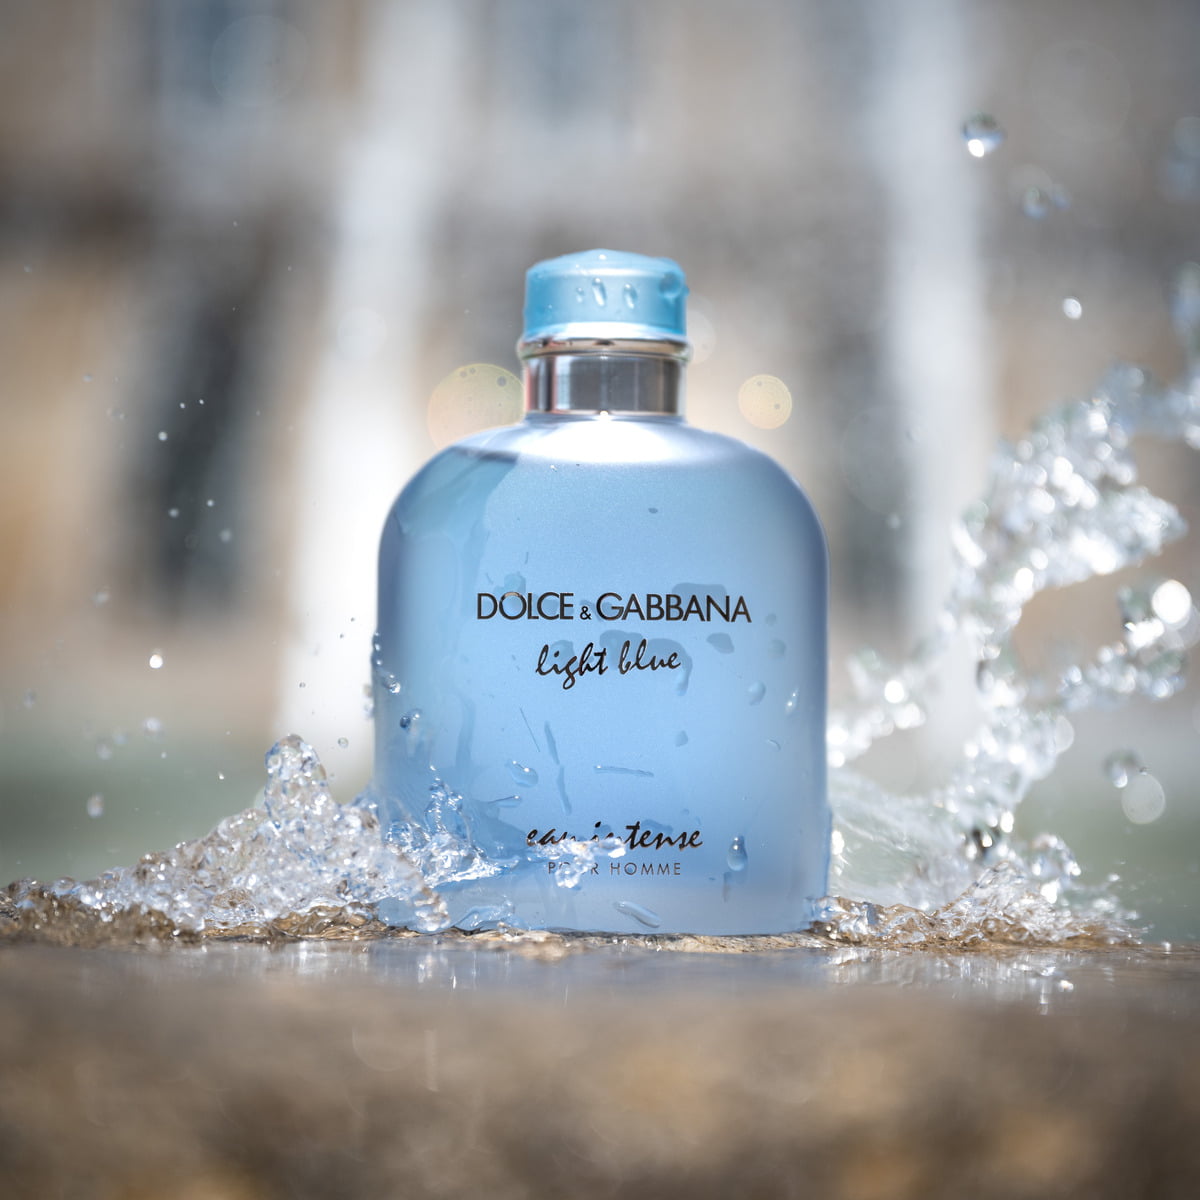 Dolce & Gabbana Light Blue Eau Intense Pour Homme EDP – The Fragrance  Decant Boutique®